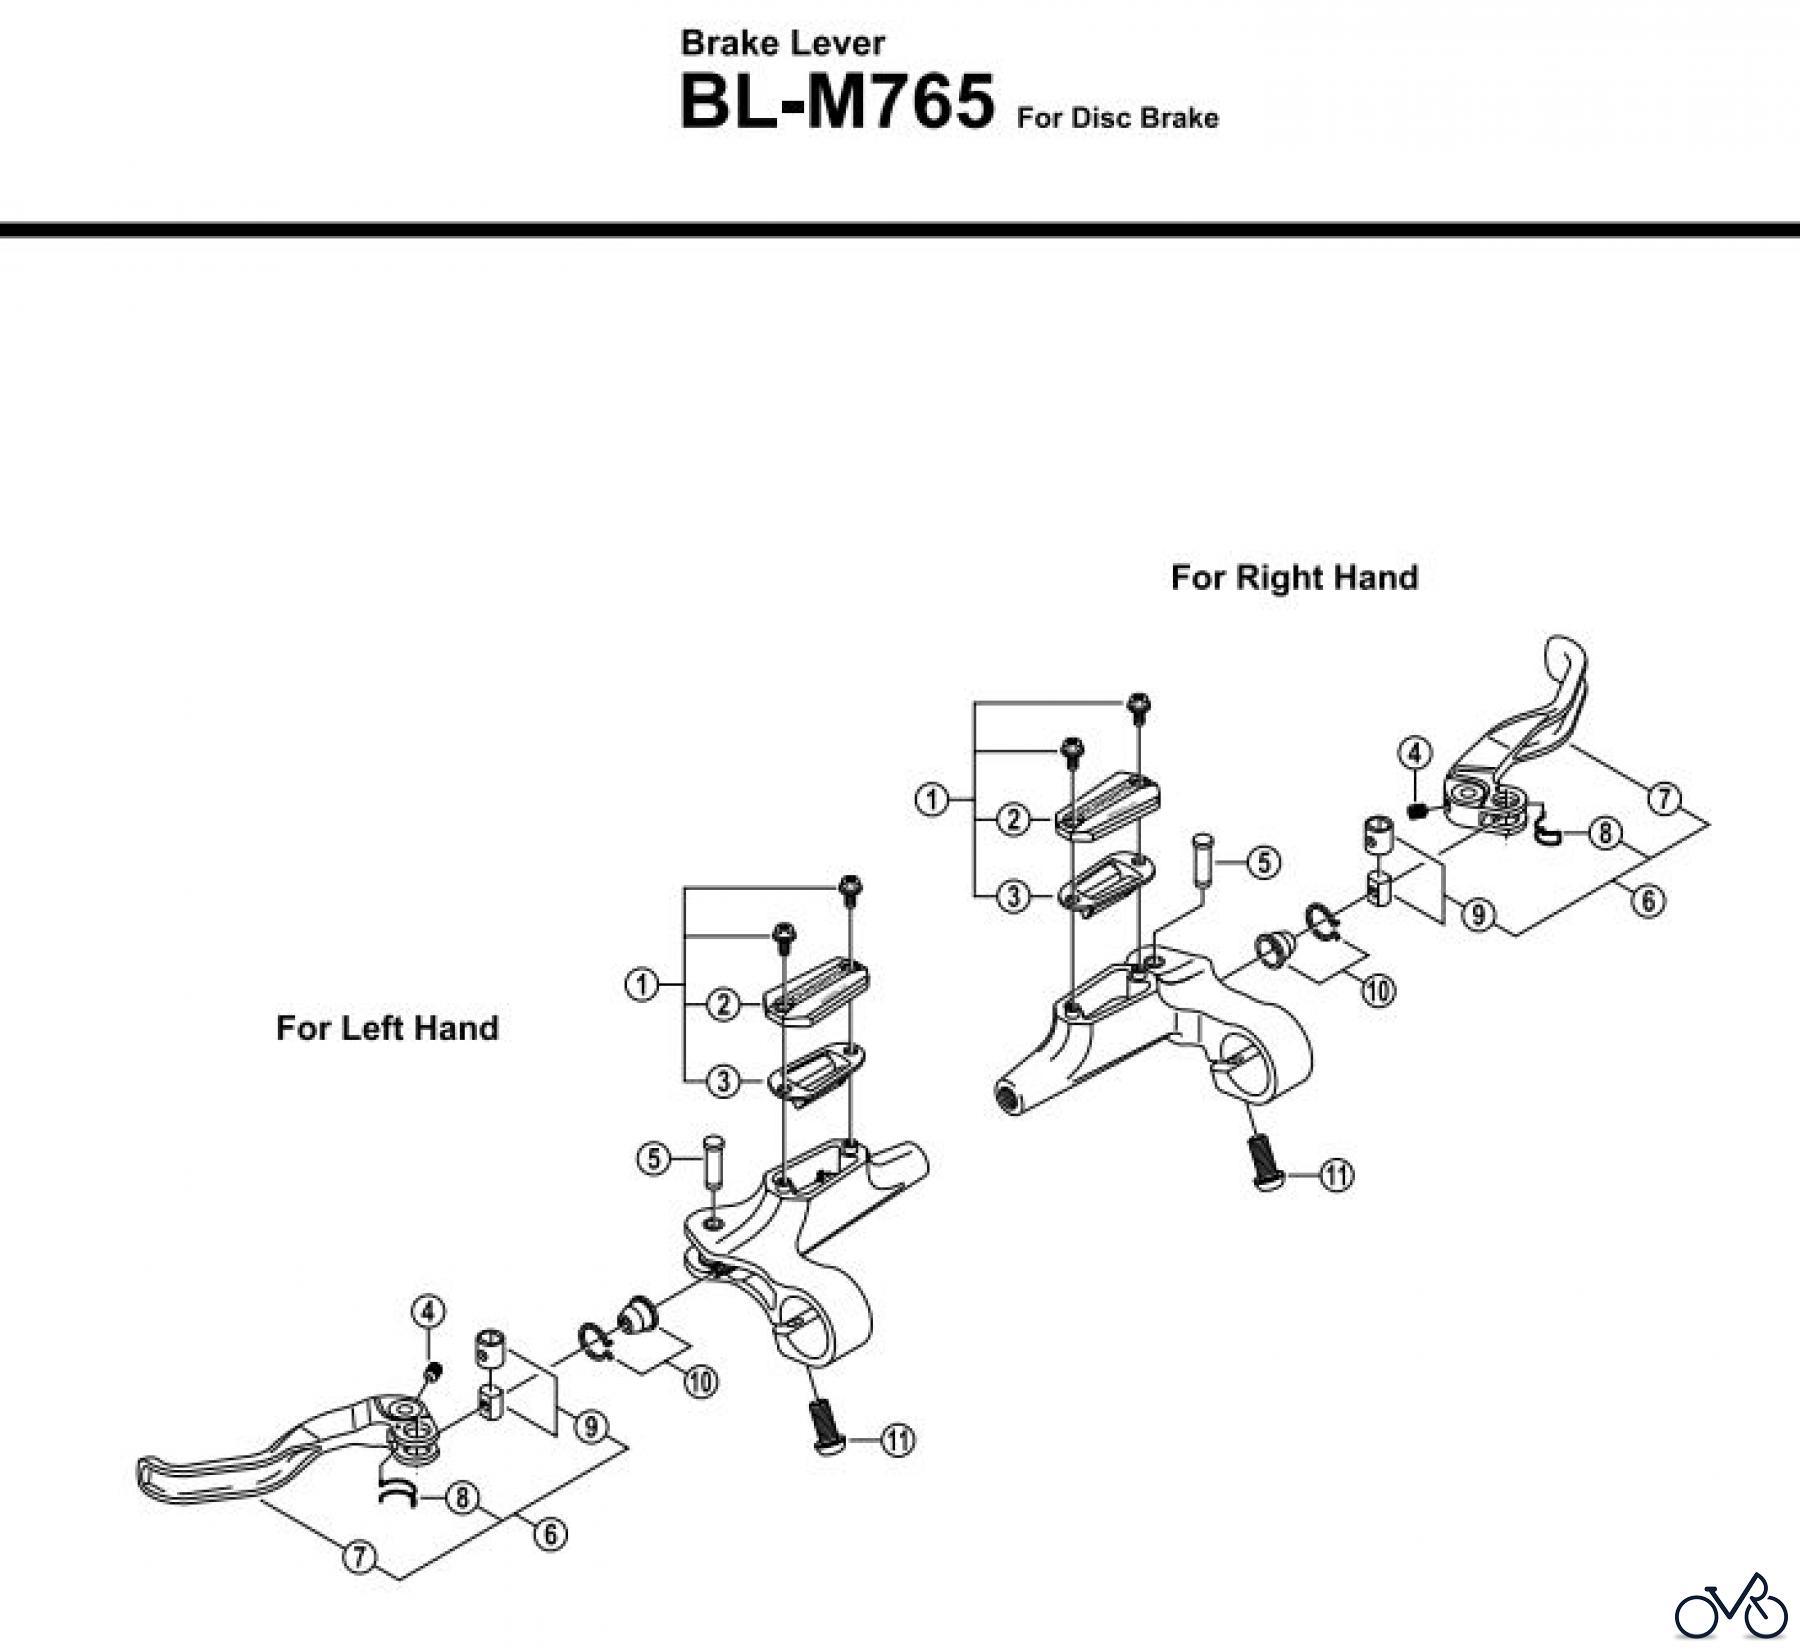  Shimano BL Brake Lever - Bremshebel BL-M765